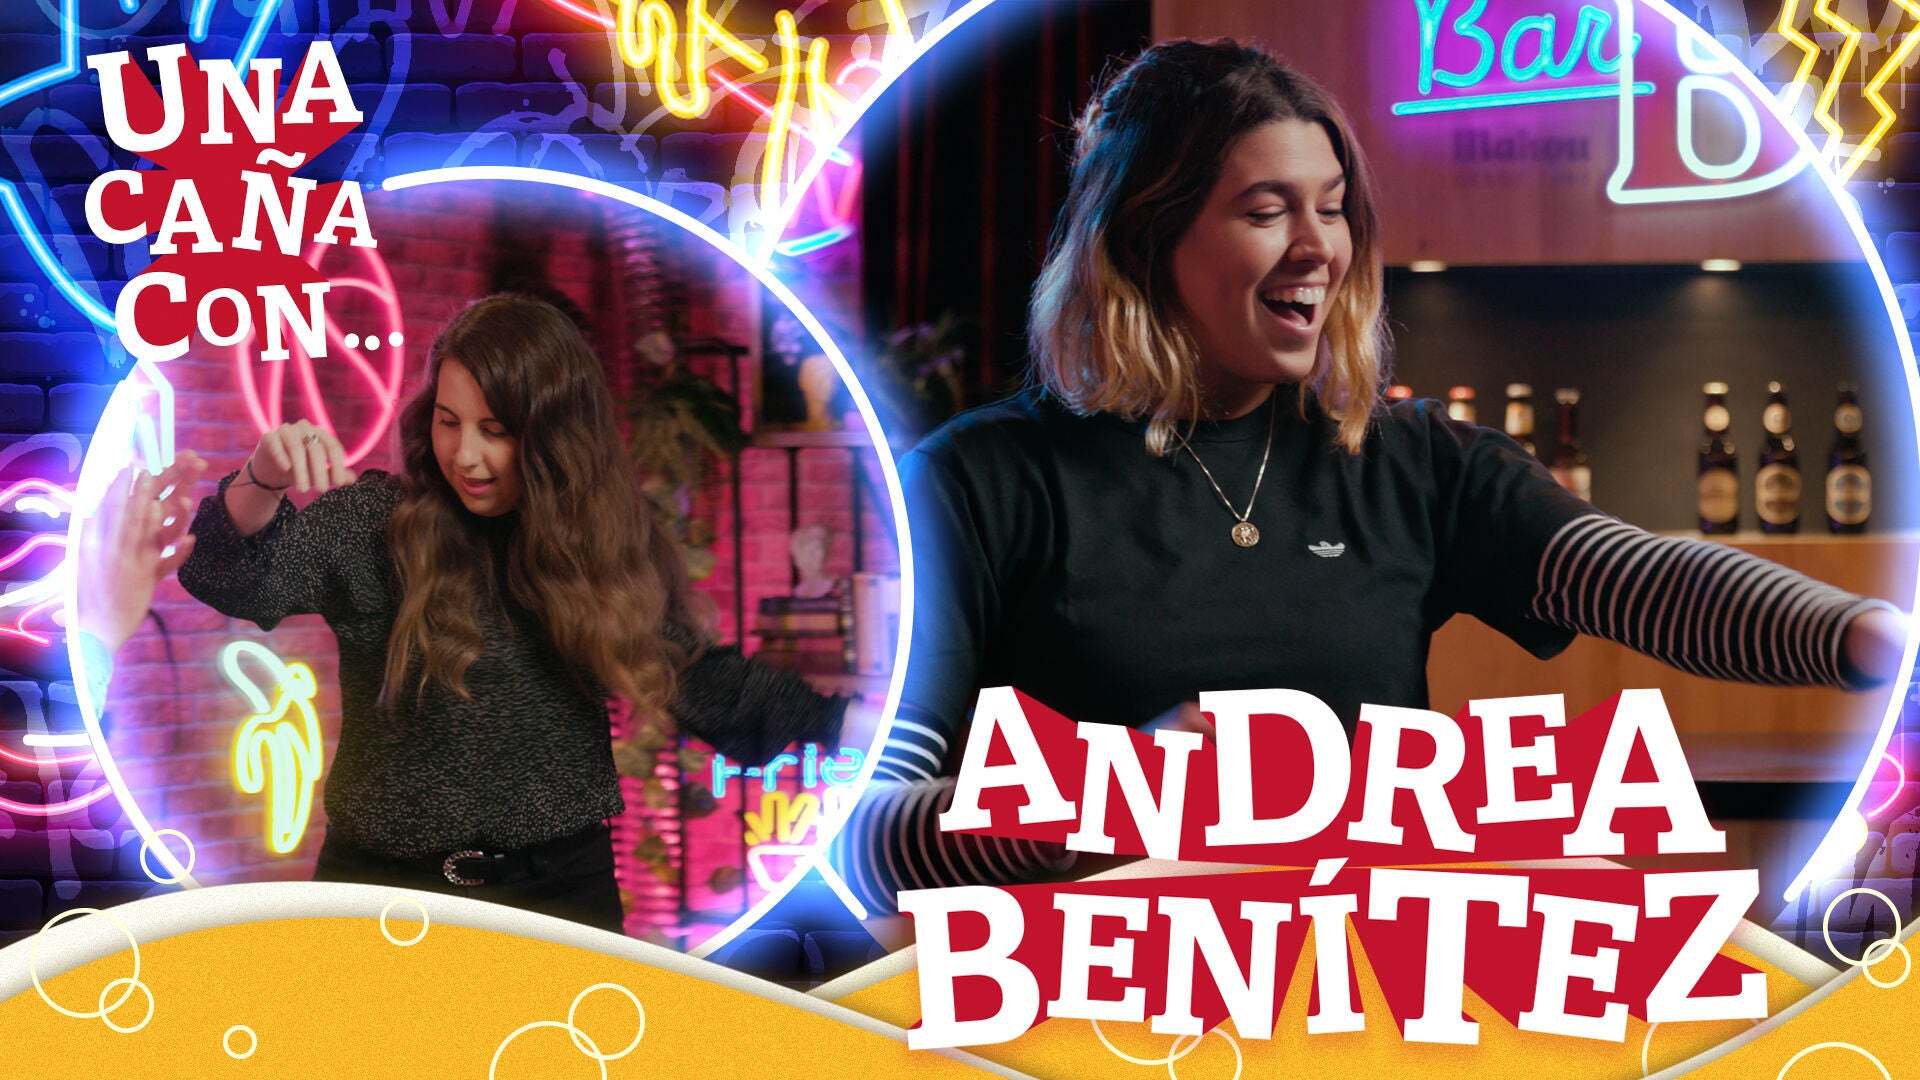 Temporada 1 #UnaCañaCon Andrea Benítez: “No tenía ningún referente femenino cuando empecé en el skate”